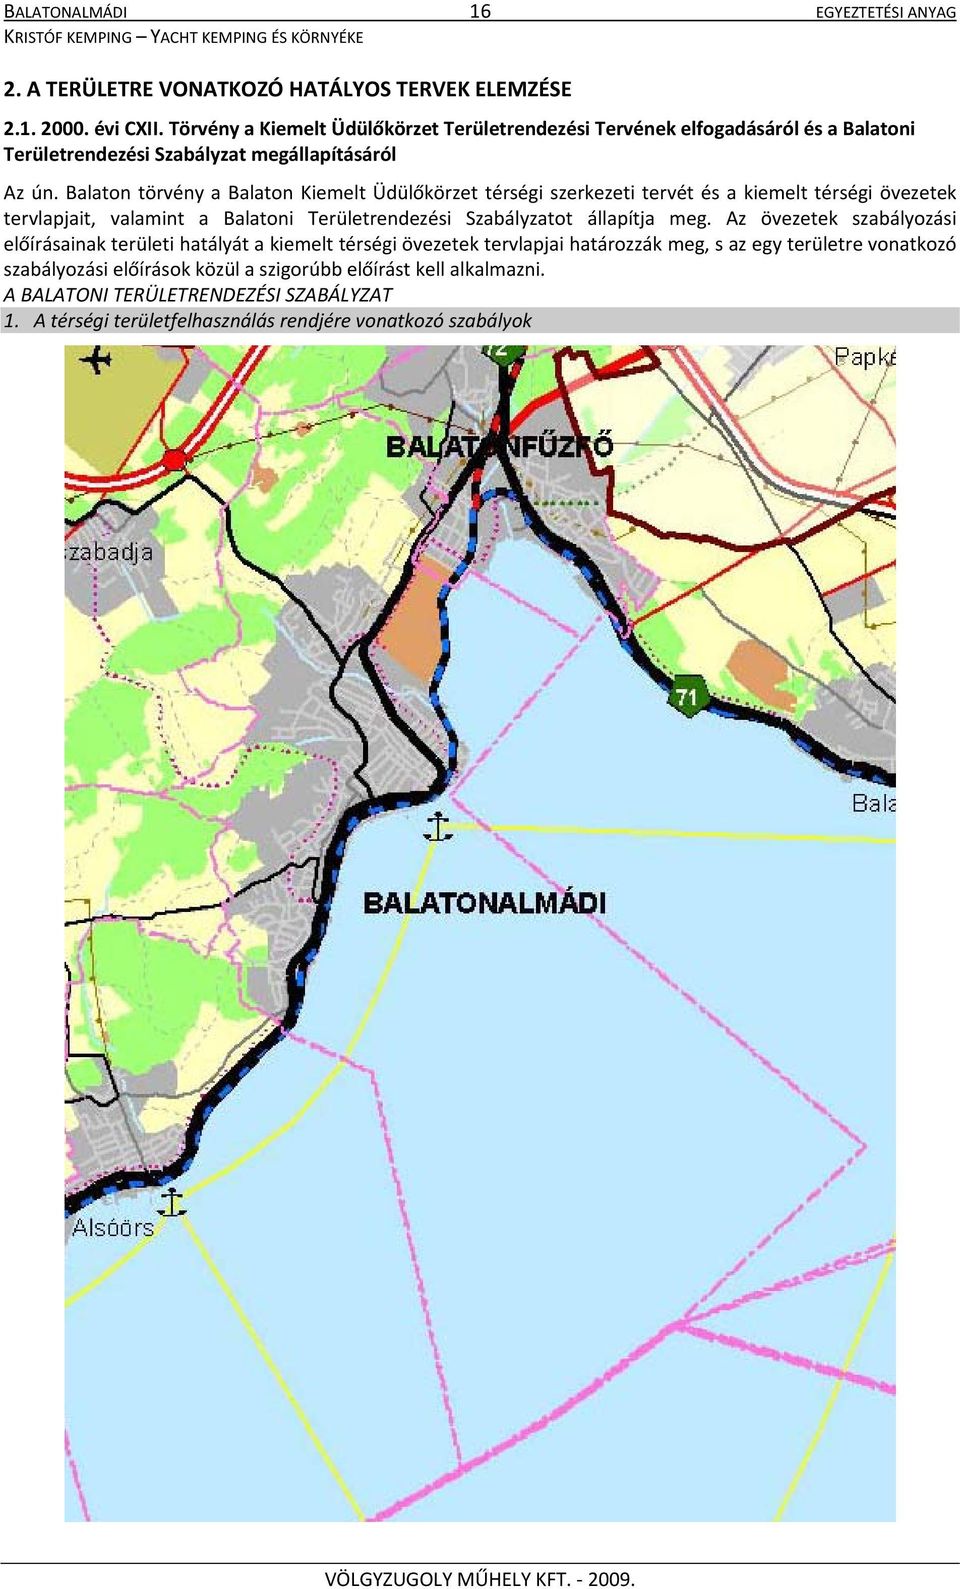 Balaton törvény a Balaton Kiemelt Üdülőkörzet térségi szerkezeti tervét és a kiemelt térségi övezetek tervlapjait, valamint a Balatoni Területrendezési Szabályzatot állapítja meg.